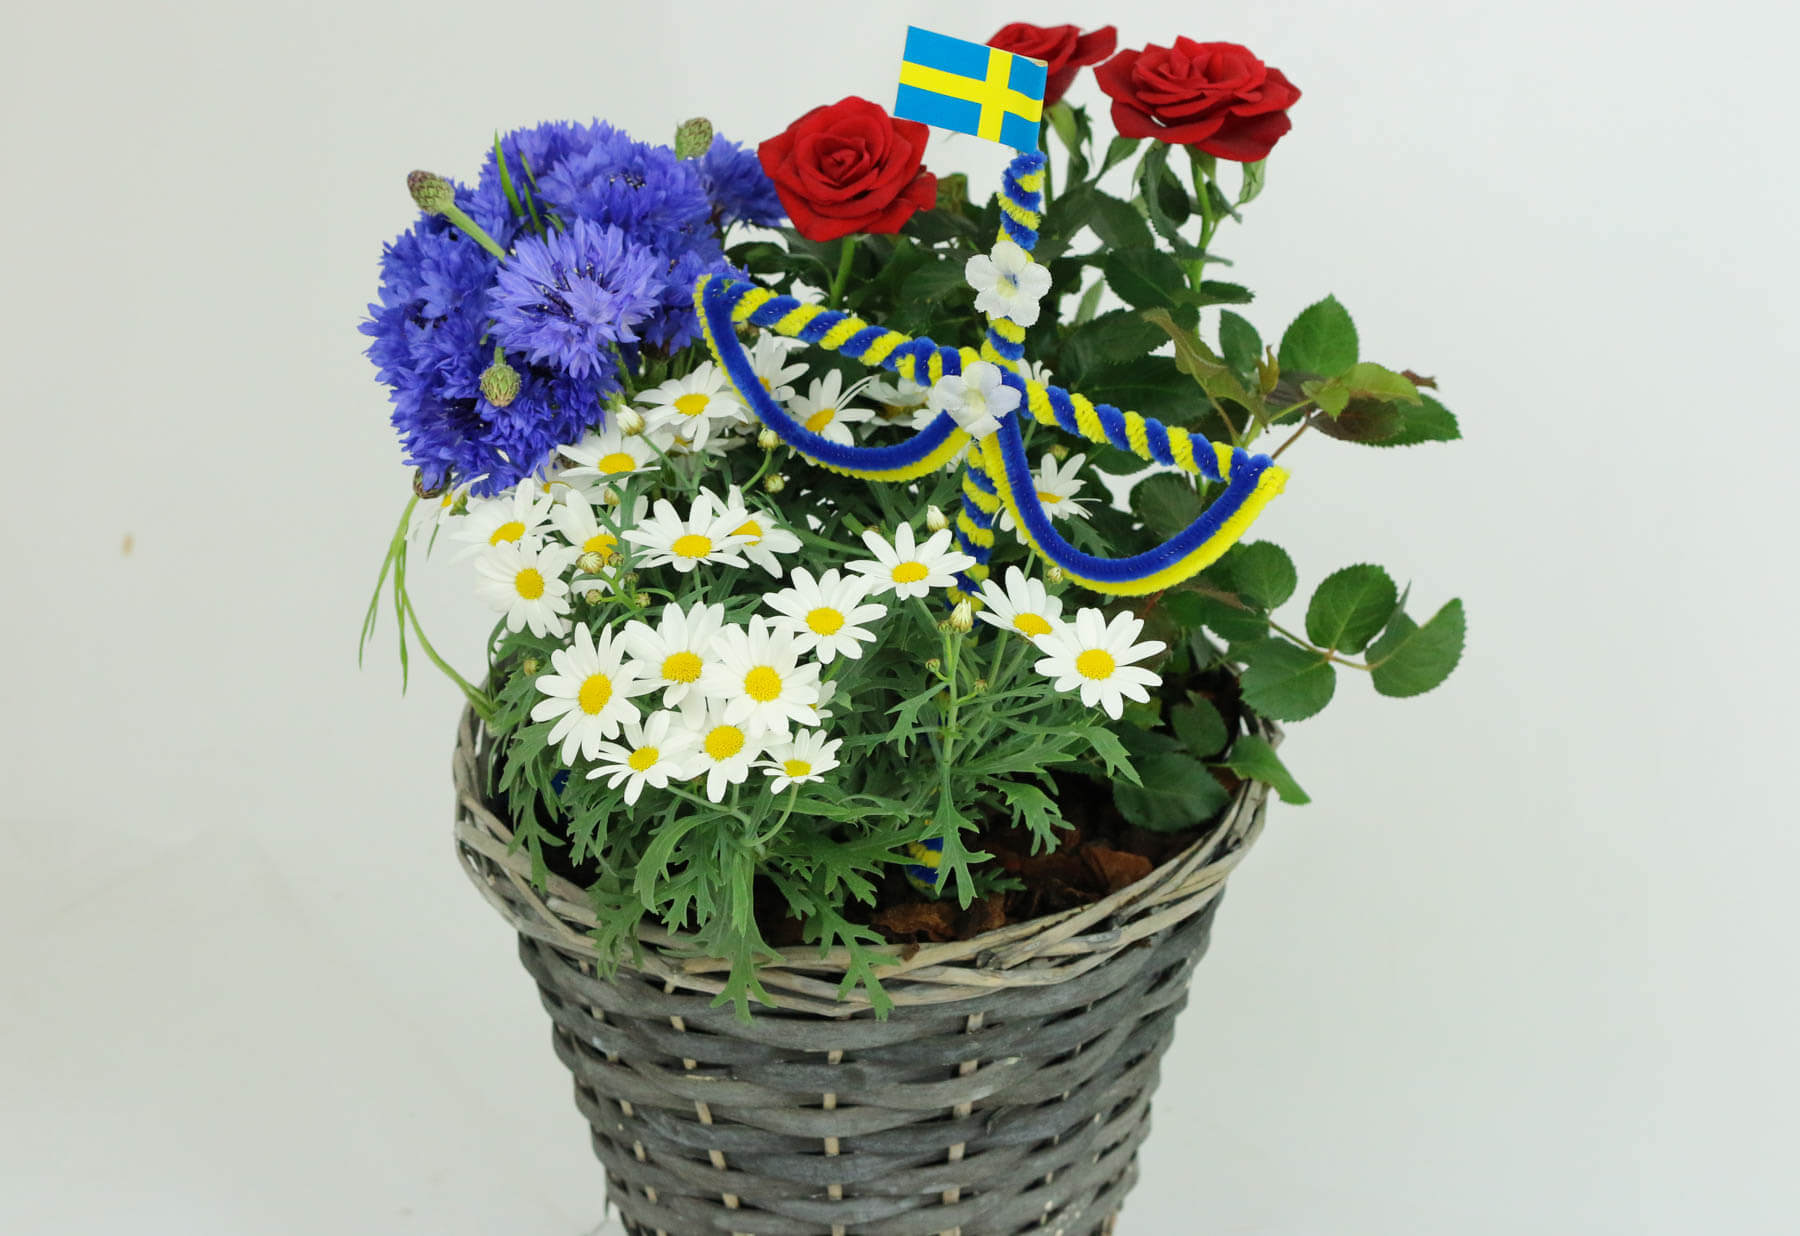 Sommarblommor. Plantering i blått, vitt, gult och rött med en midsommarstång. Passar bra till Midsommar. Svenska flaggan Sverigeflagga Blommorna är: margerit, blåklint och krukros.